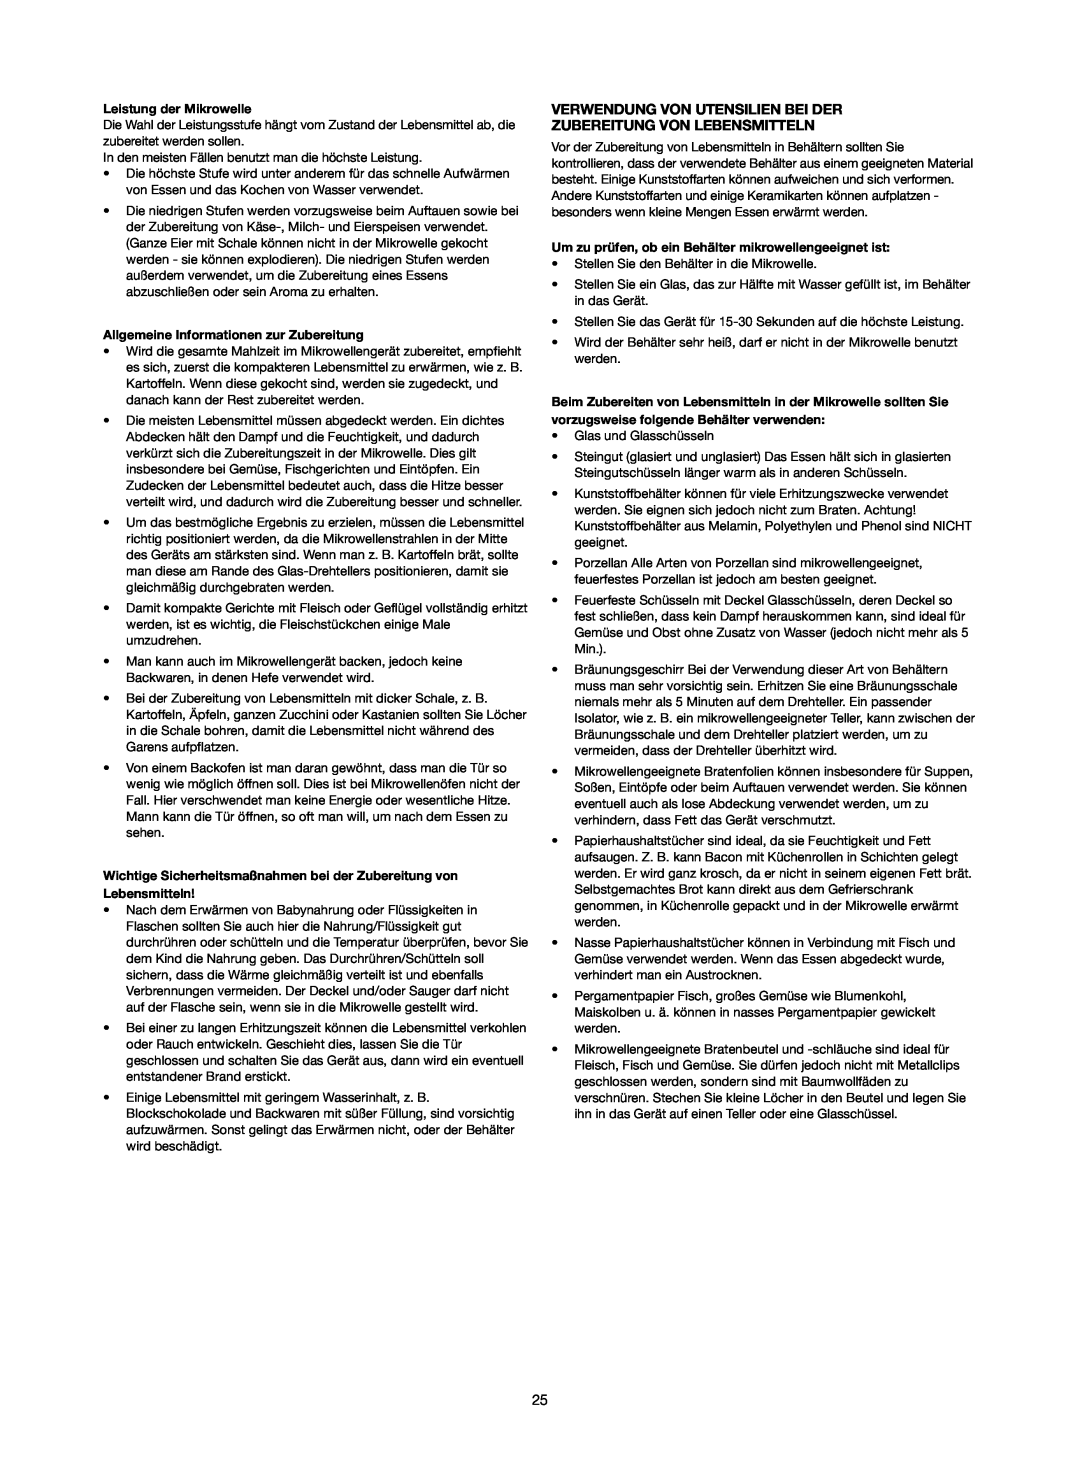 Melissa 253-006 manual Verwendung Von Utensilien Bei Der, Zubereitung Von Lebensmitteln, Leistung der Mikrowelle 